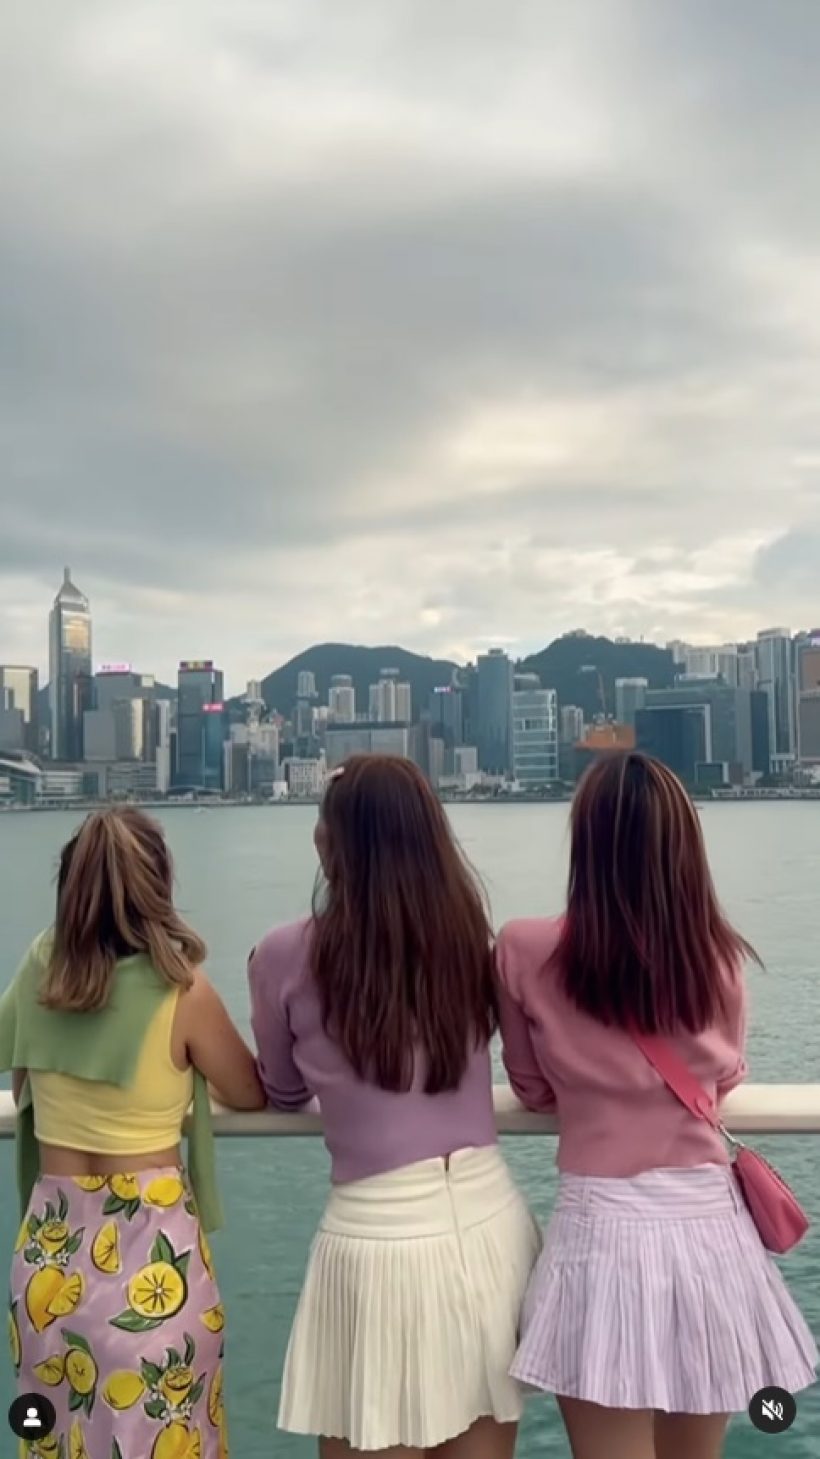 สนิทกันตอนไหน? สาวสวย 3 คนนี้ซี้กันมาก ล่าสุดยกทีมเที่ยวฮ่องกง